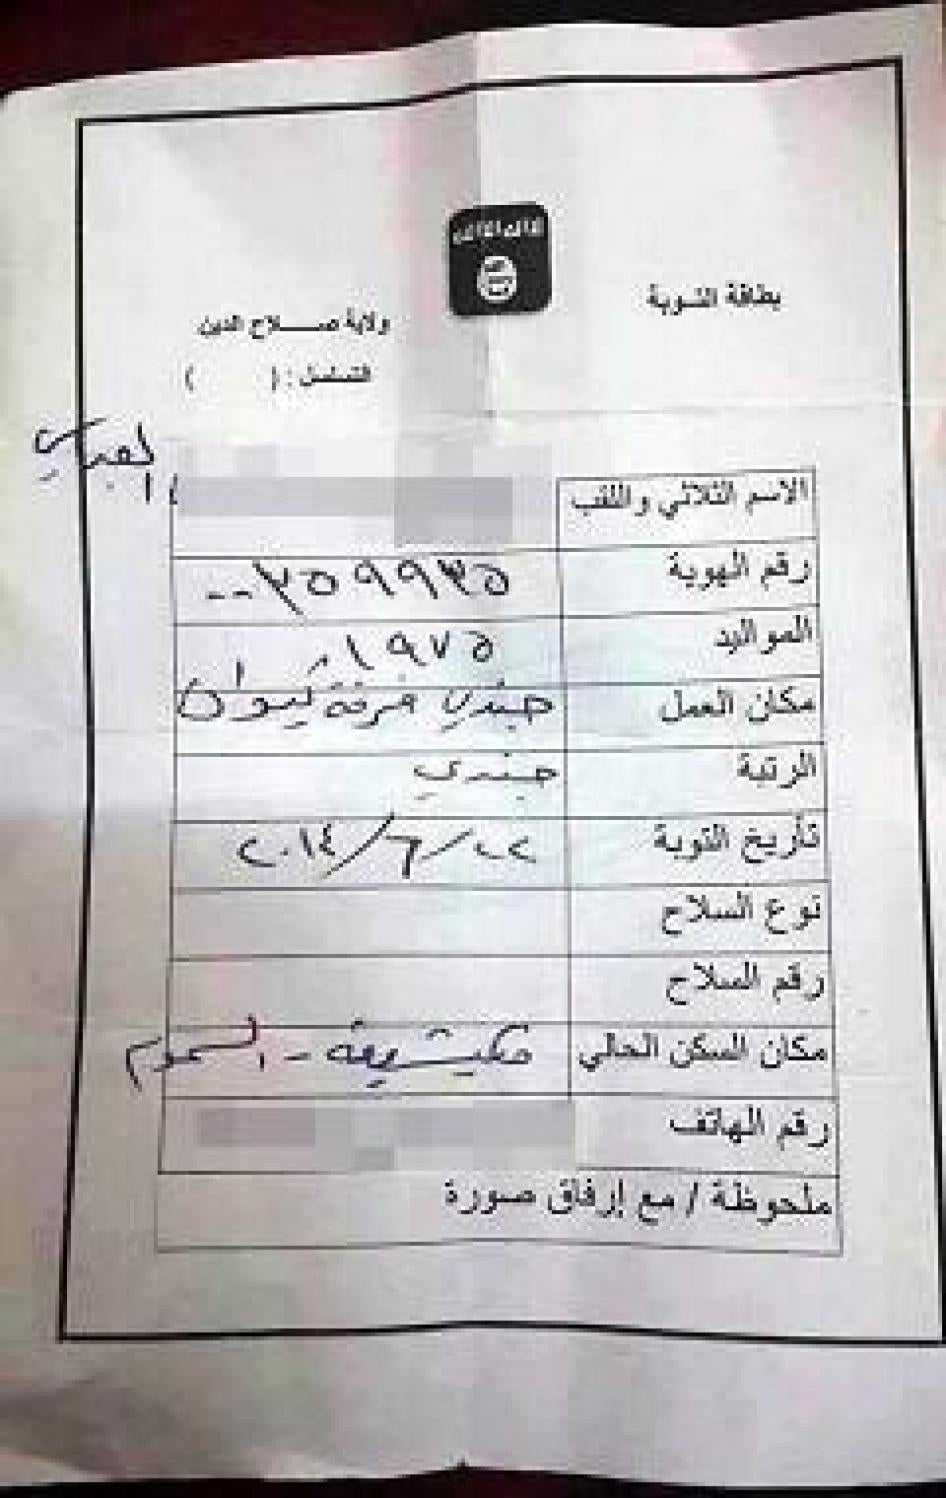 “بطاقة التوبة" التي أصدرتها إمارة صلاح الدين التابعة لـ داعش في 22 يونيو/حزيران 2014، لجندي عراقي، تم الحصول عليها بشكل خاص.